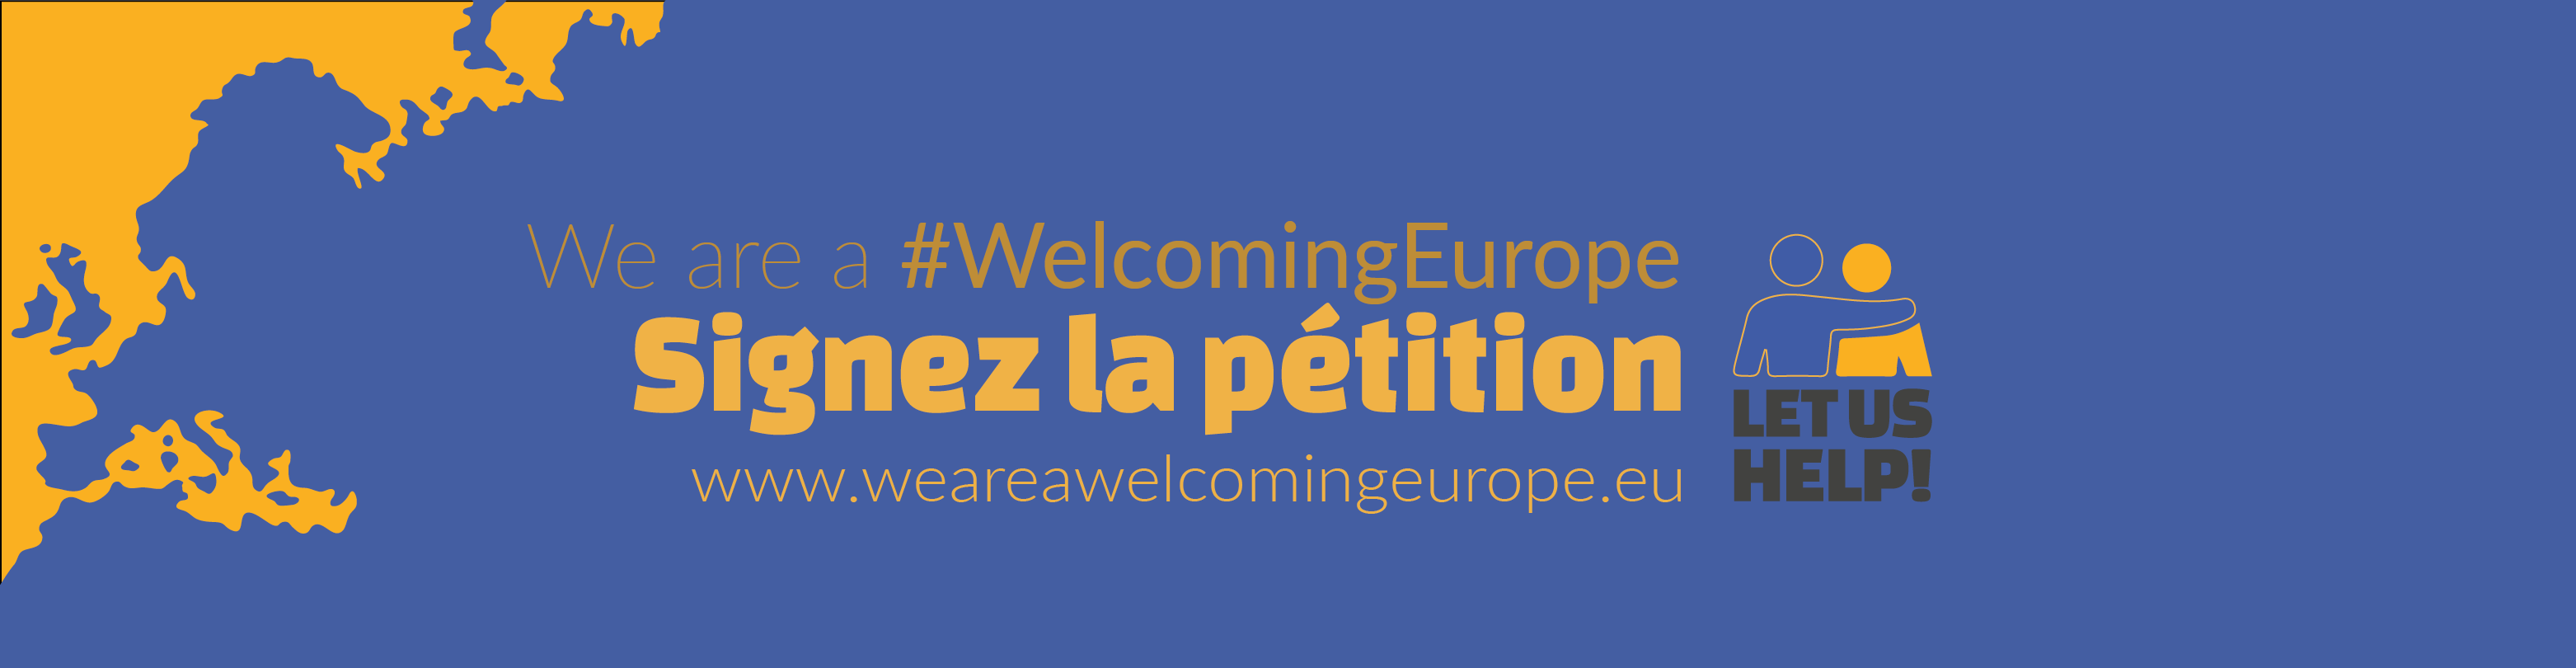 Nous sommes une Europe accueillante : laissez-nous agir !